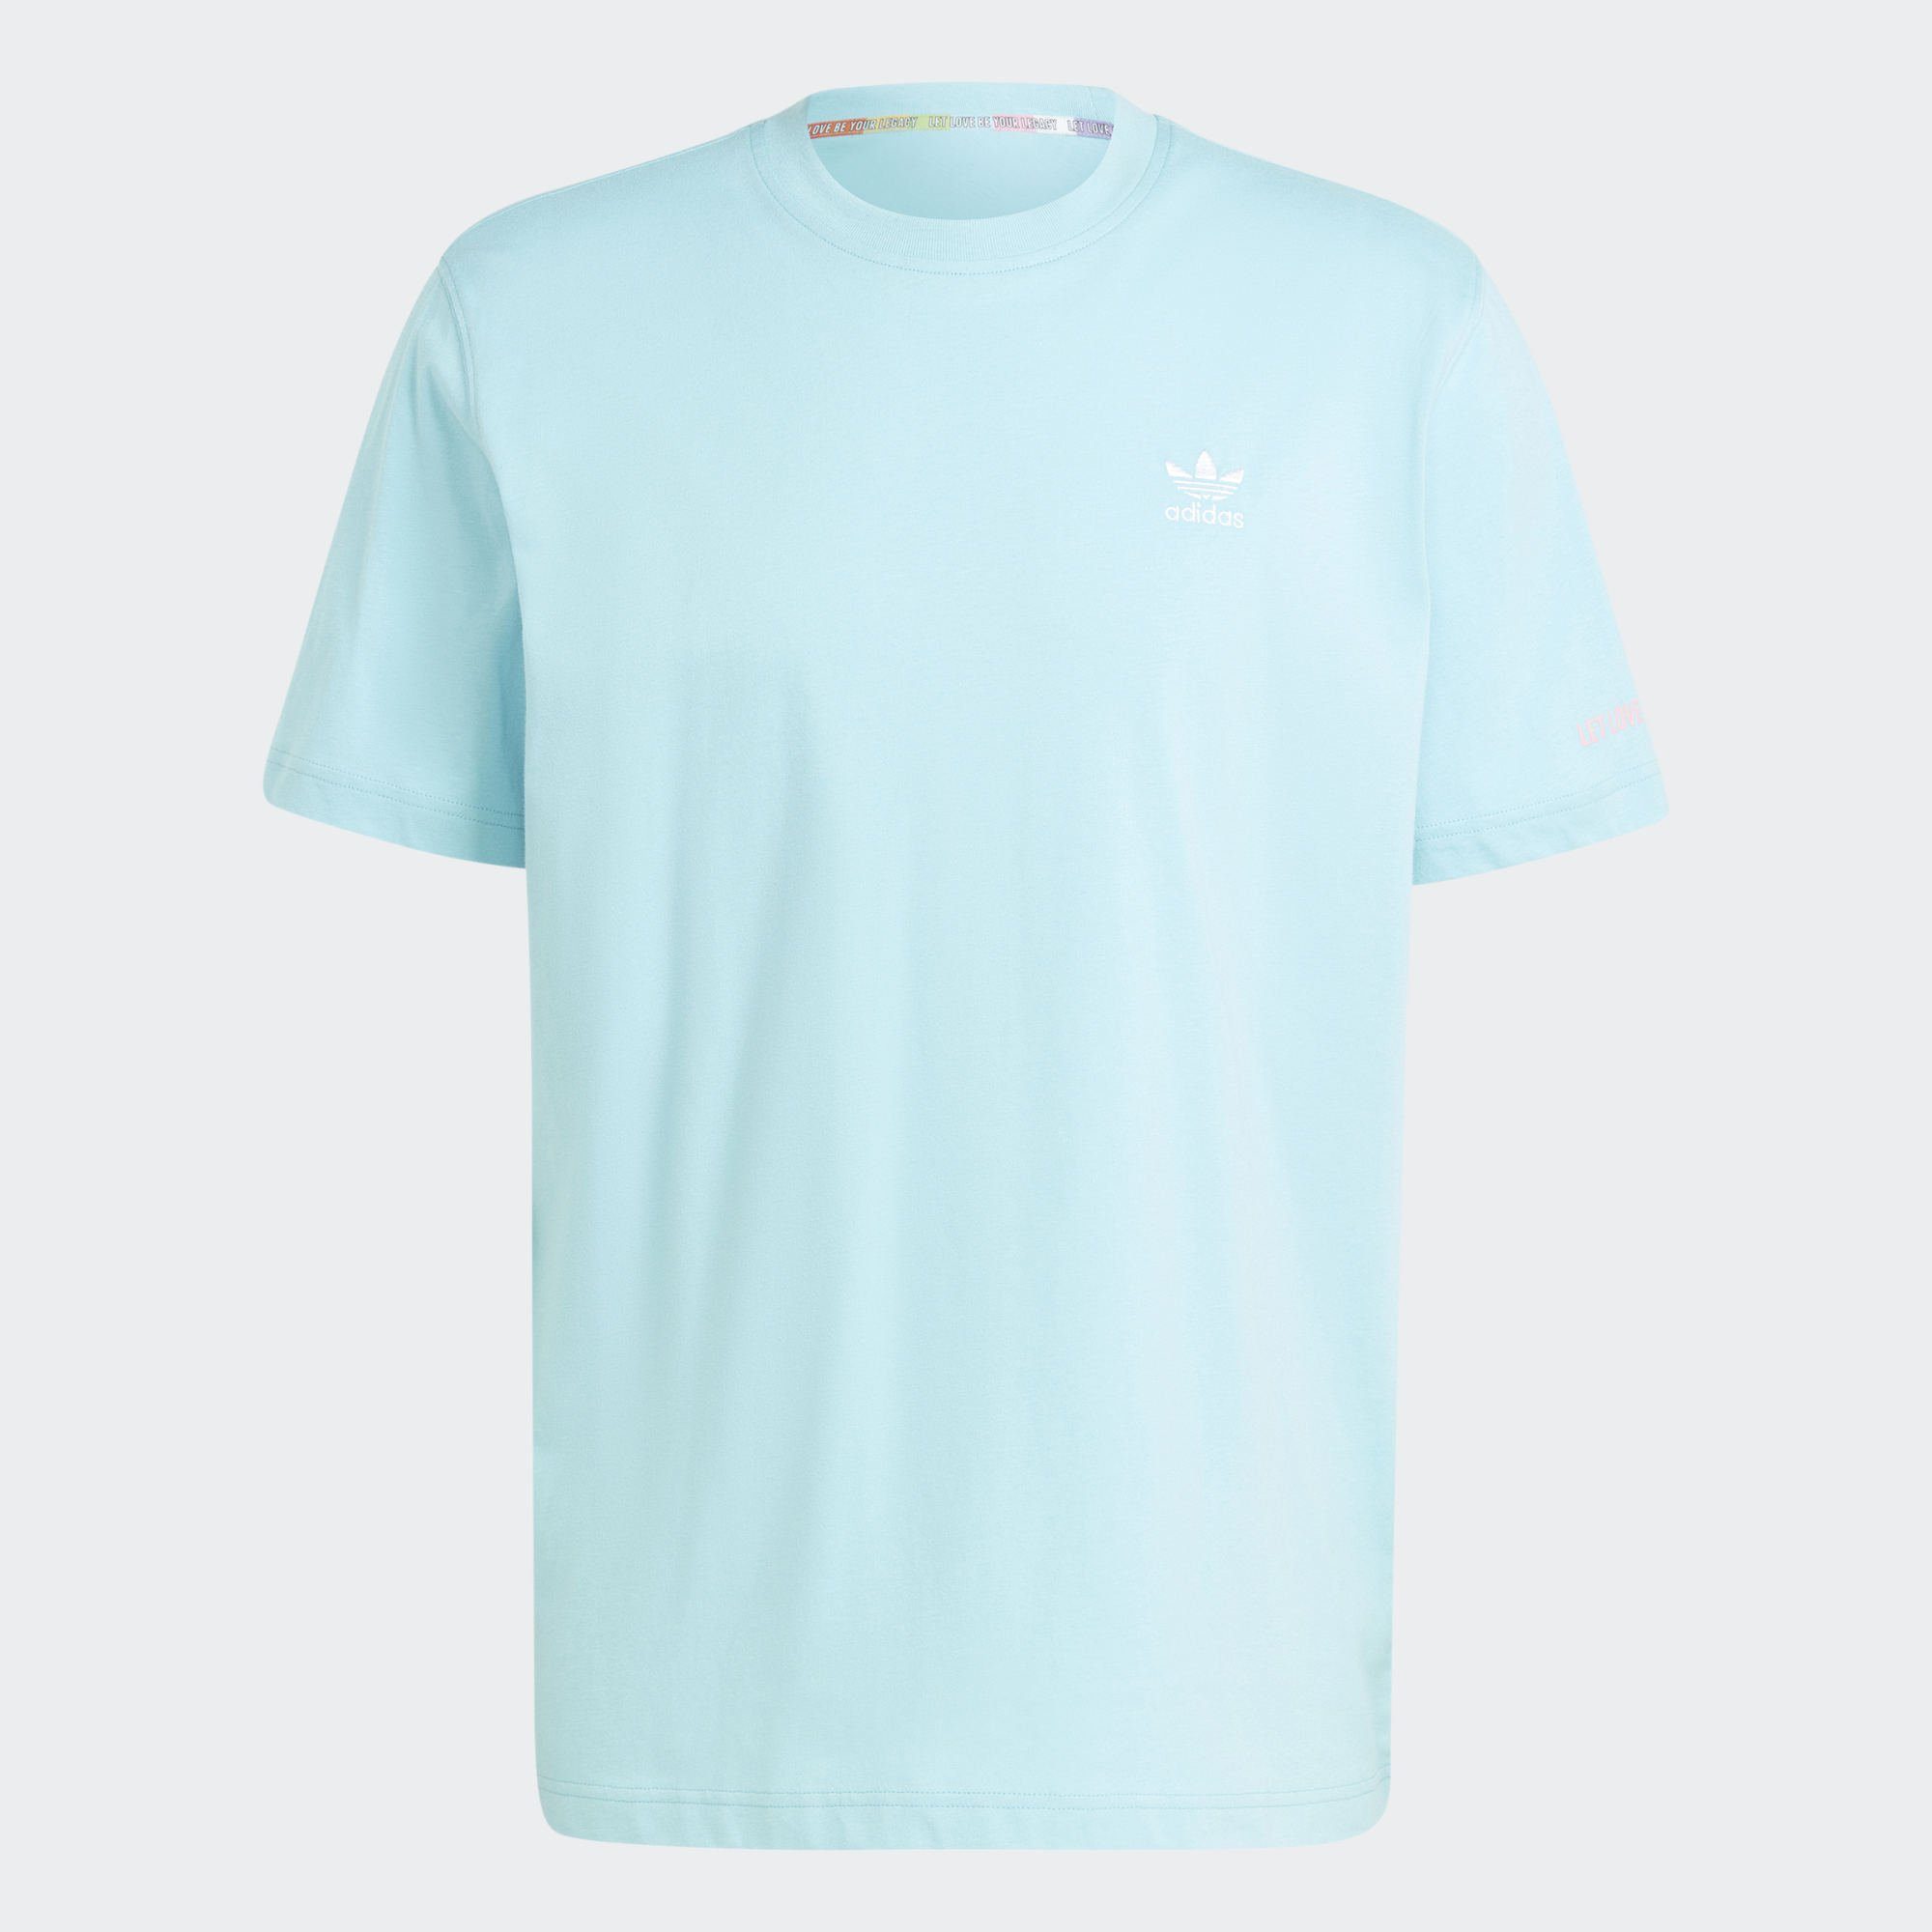 Aqua T-Shirt T-SHIRT Light GRAPHIC PRIDE RM Originals adidas